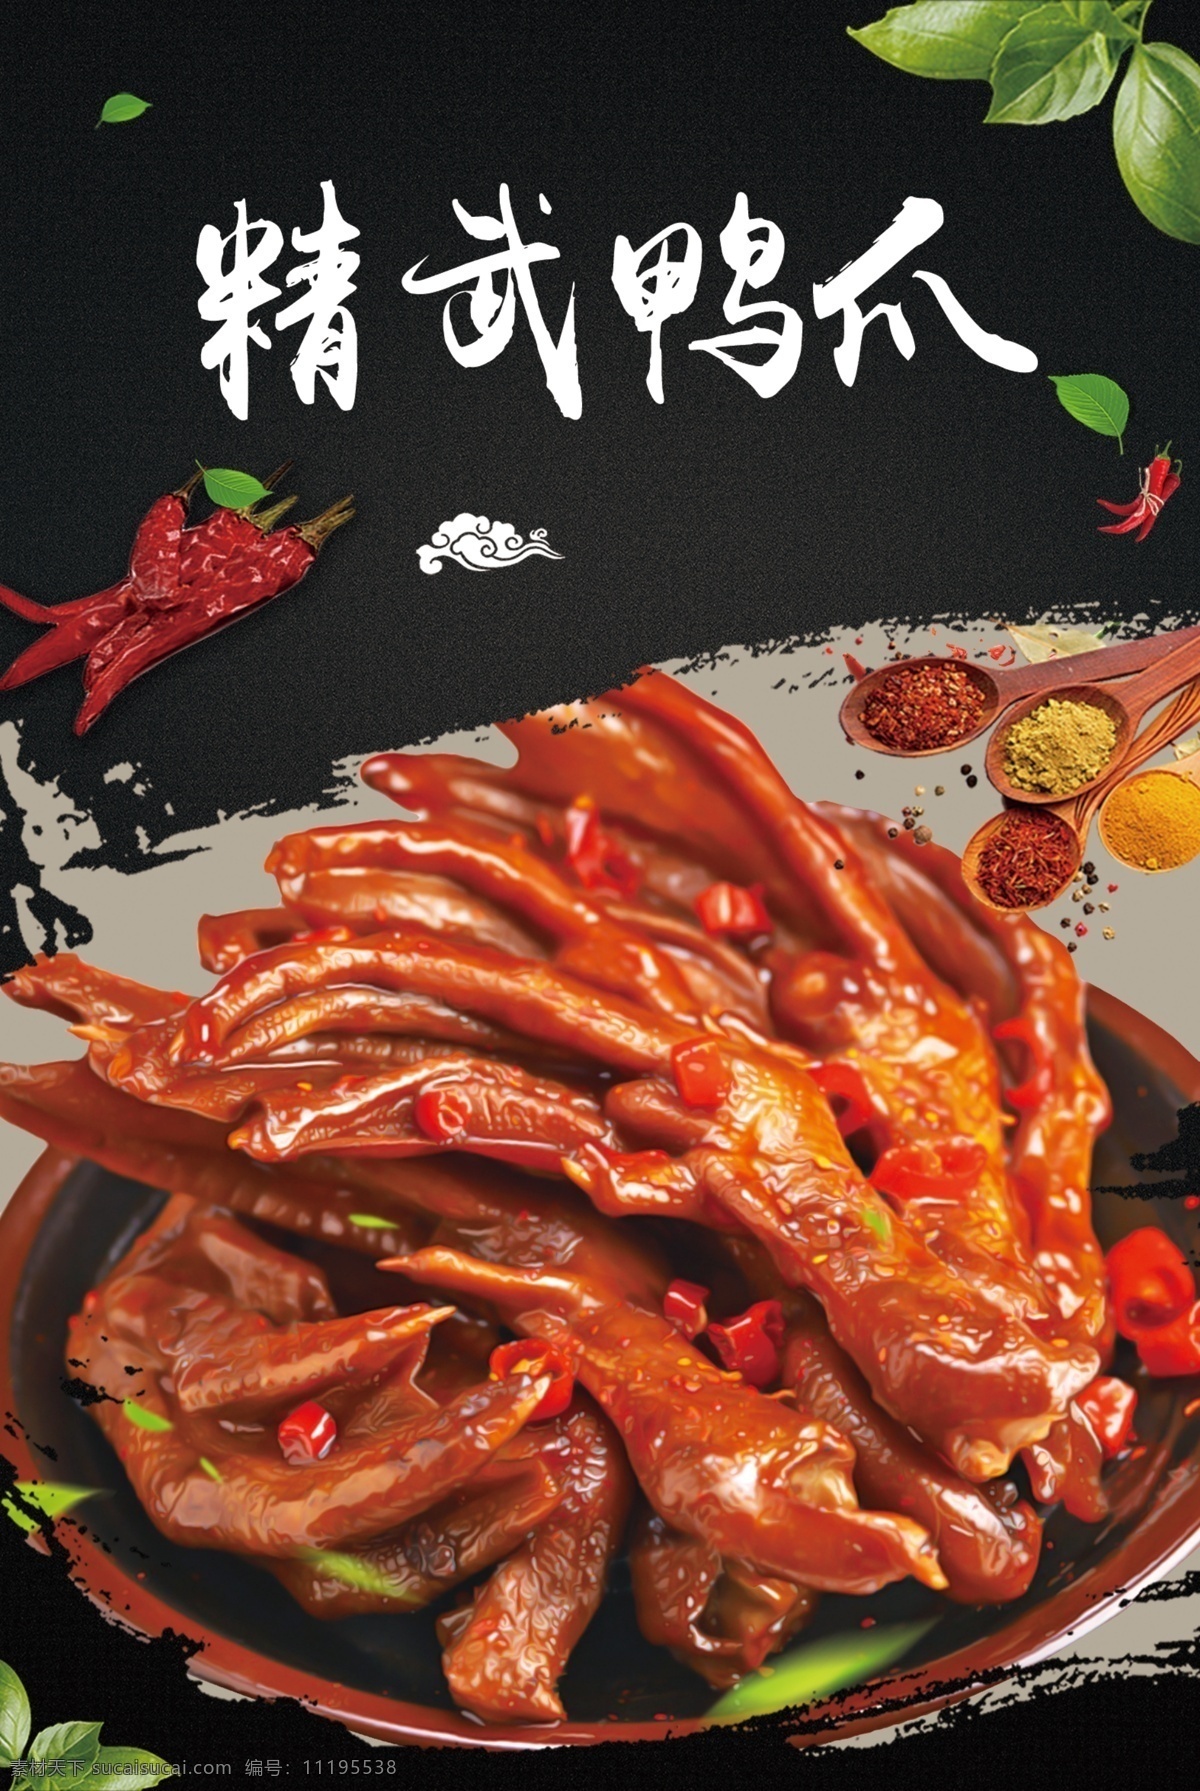 鸭爪图片 香辣 麻辣 鸭爪 鸭货 熟食 中国风 美食 中国美食 华夏美食 室内广告设计